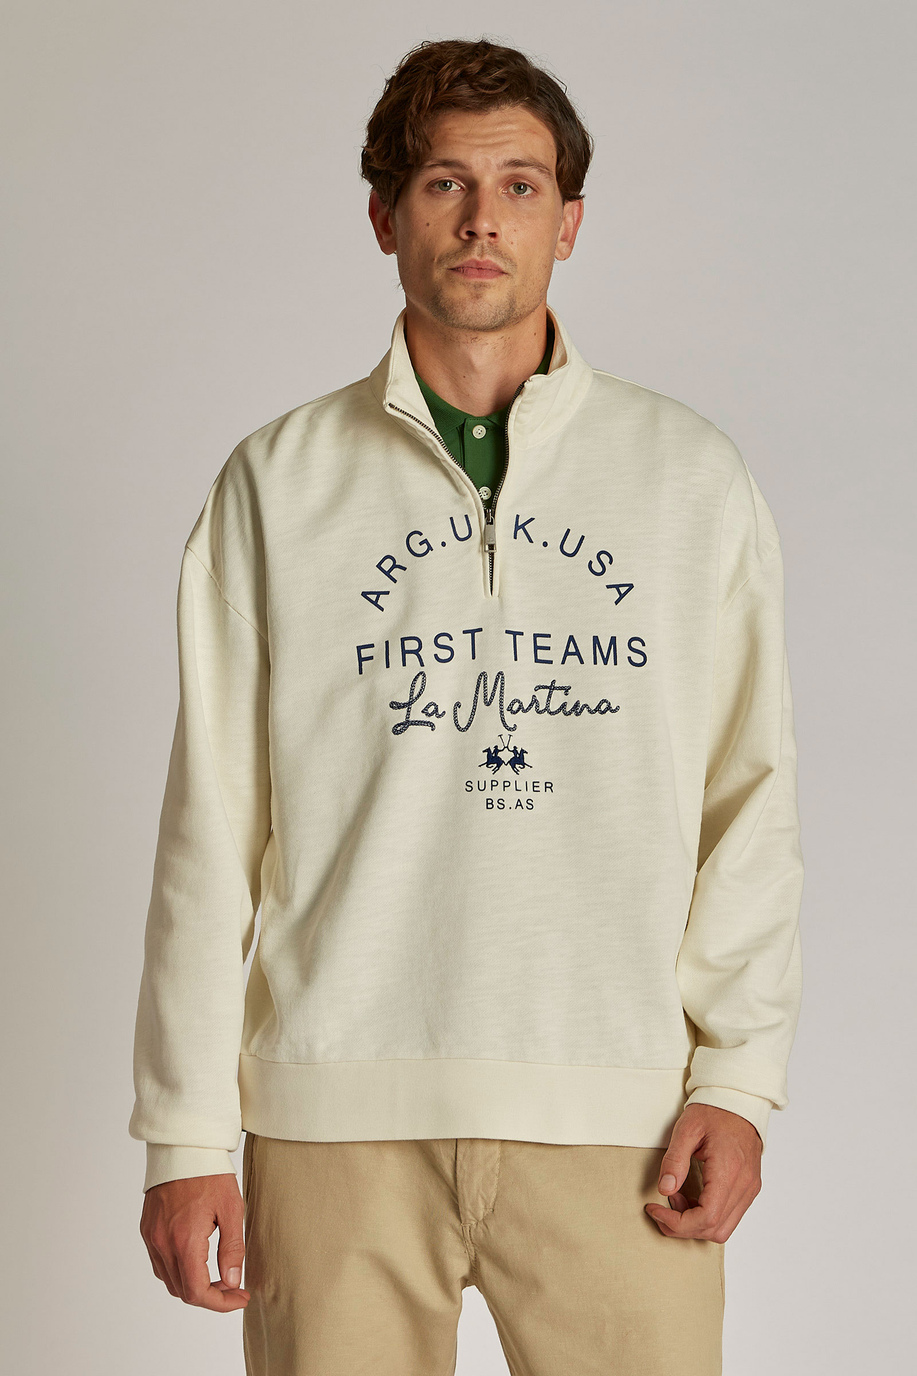 Men's oversized zip-neck sweatshirt in 100% cotton fabric - Sweatshirts | La Martina - Official Online Shop